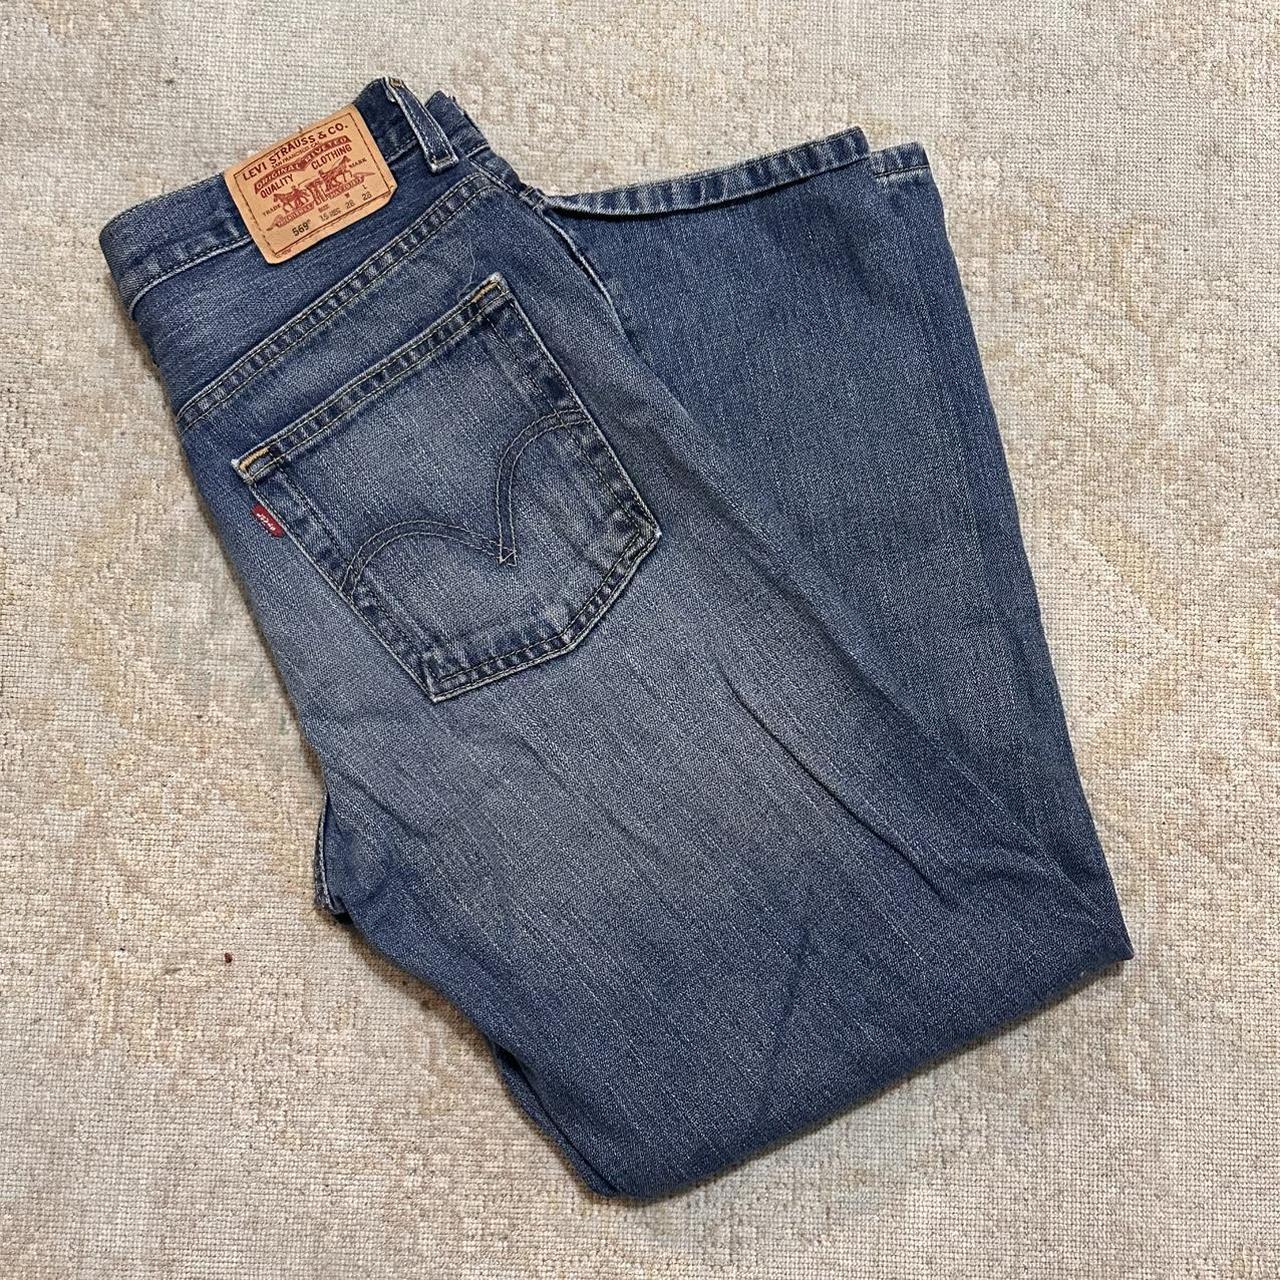 Vintage Levi’s Blue jeans Super cute jeans to wear... - Depop